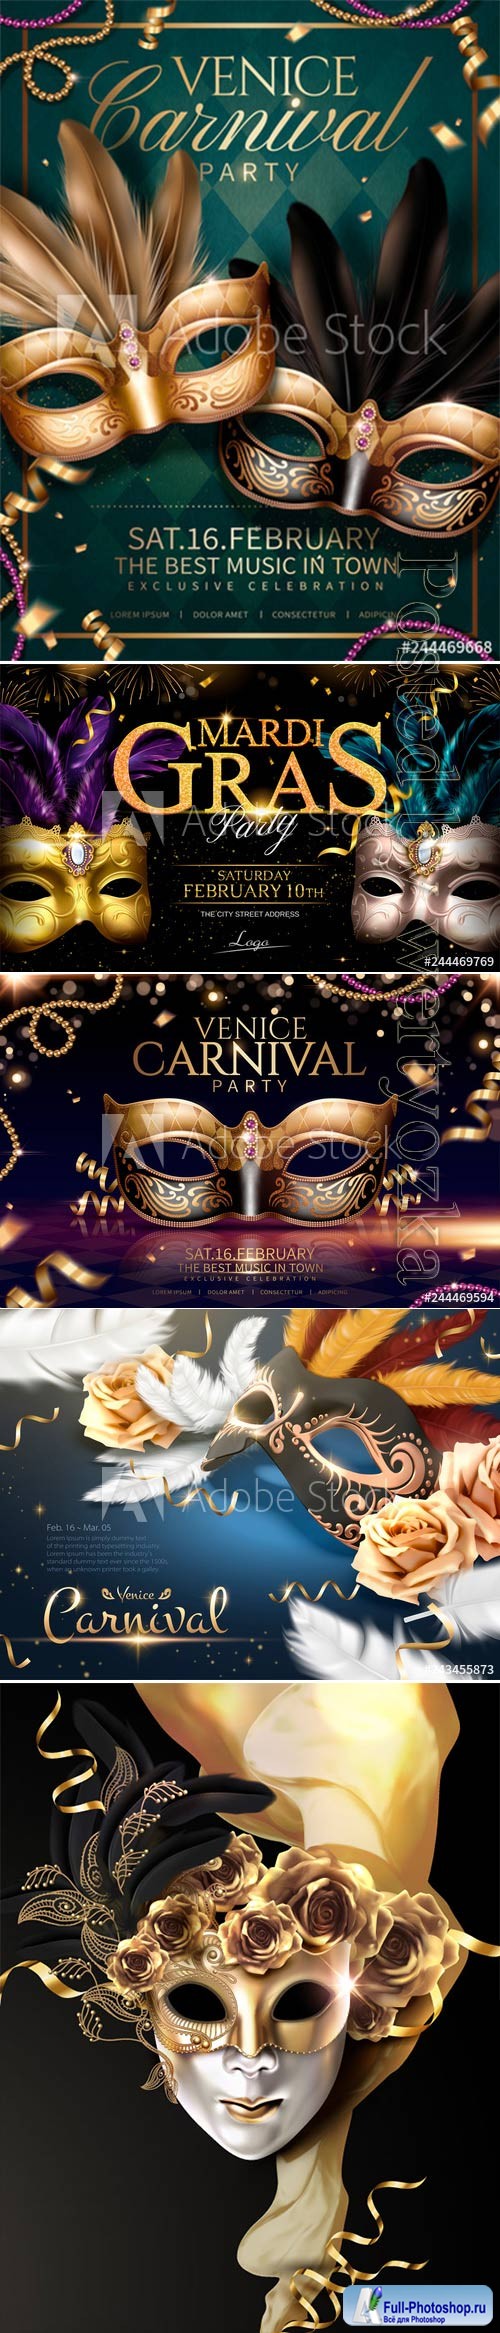 Mardi gras carnival poster, Venice carnival vector design